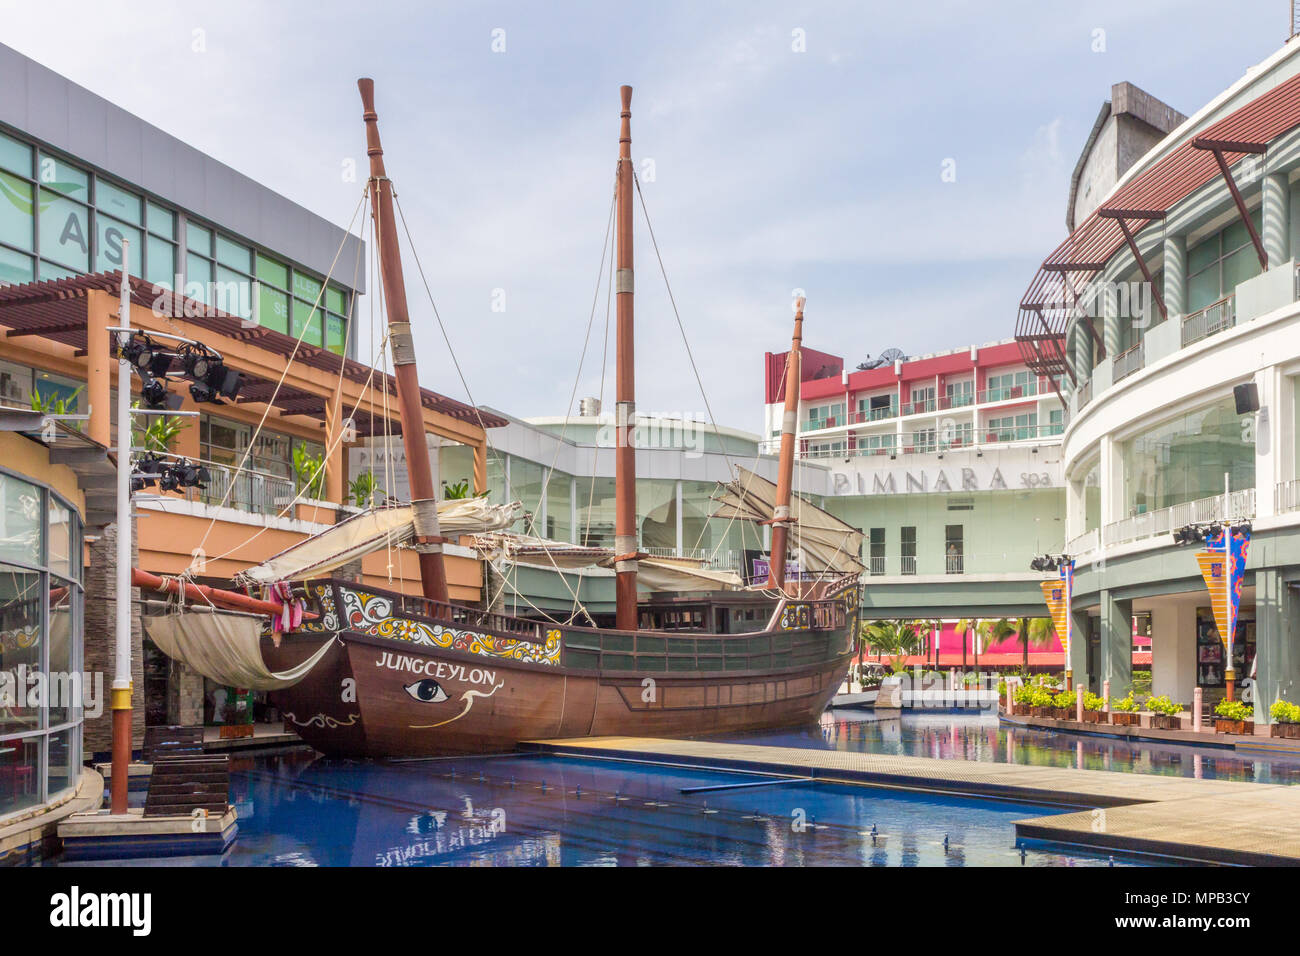 Simulacro de barco galeón, Jung Ceylon, Centro comercial, la playa Patong Beach, Phuket, Tailandia Foto de stock